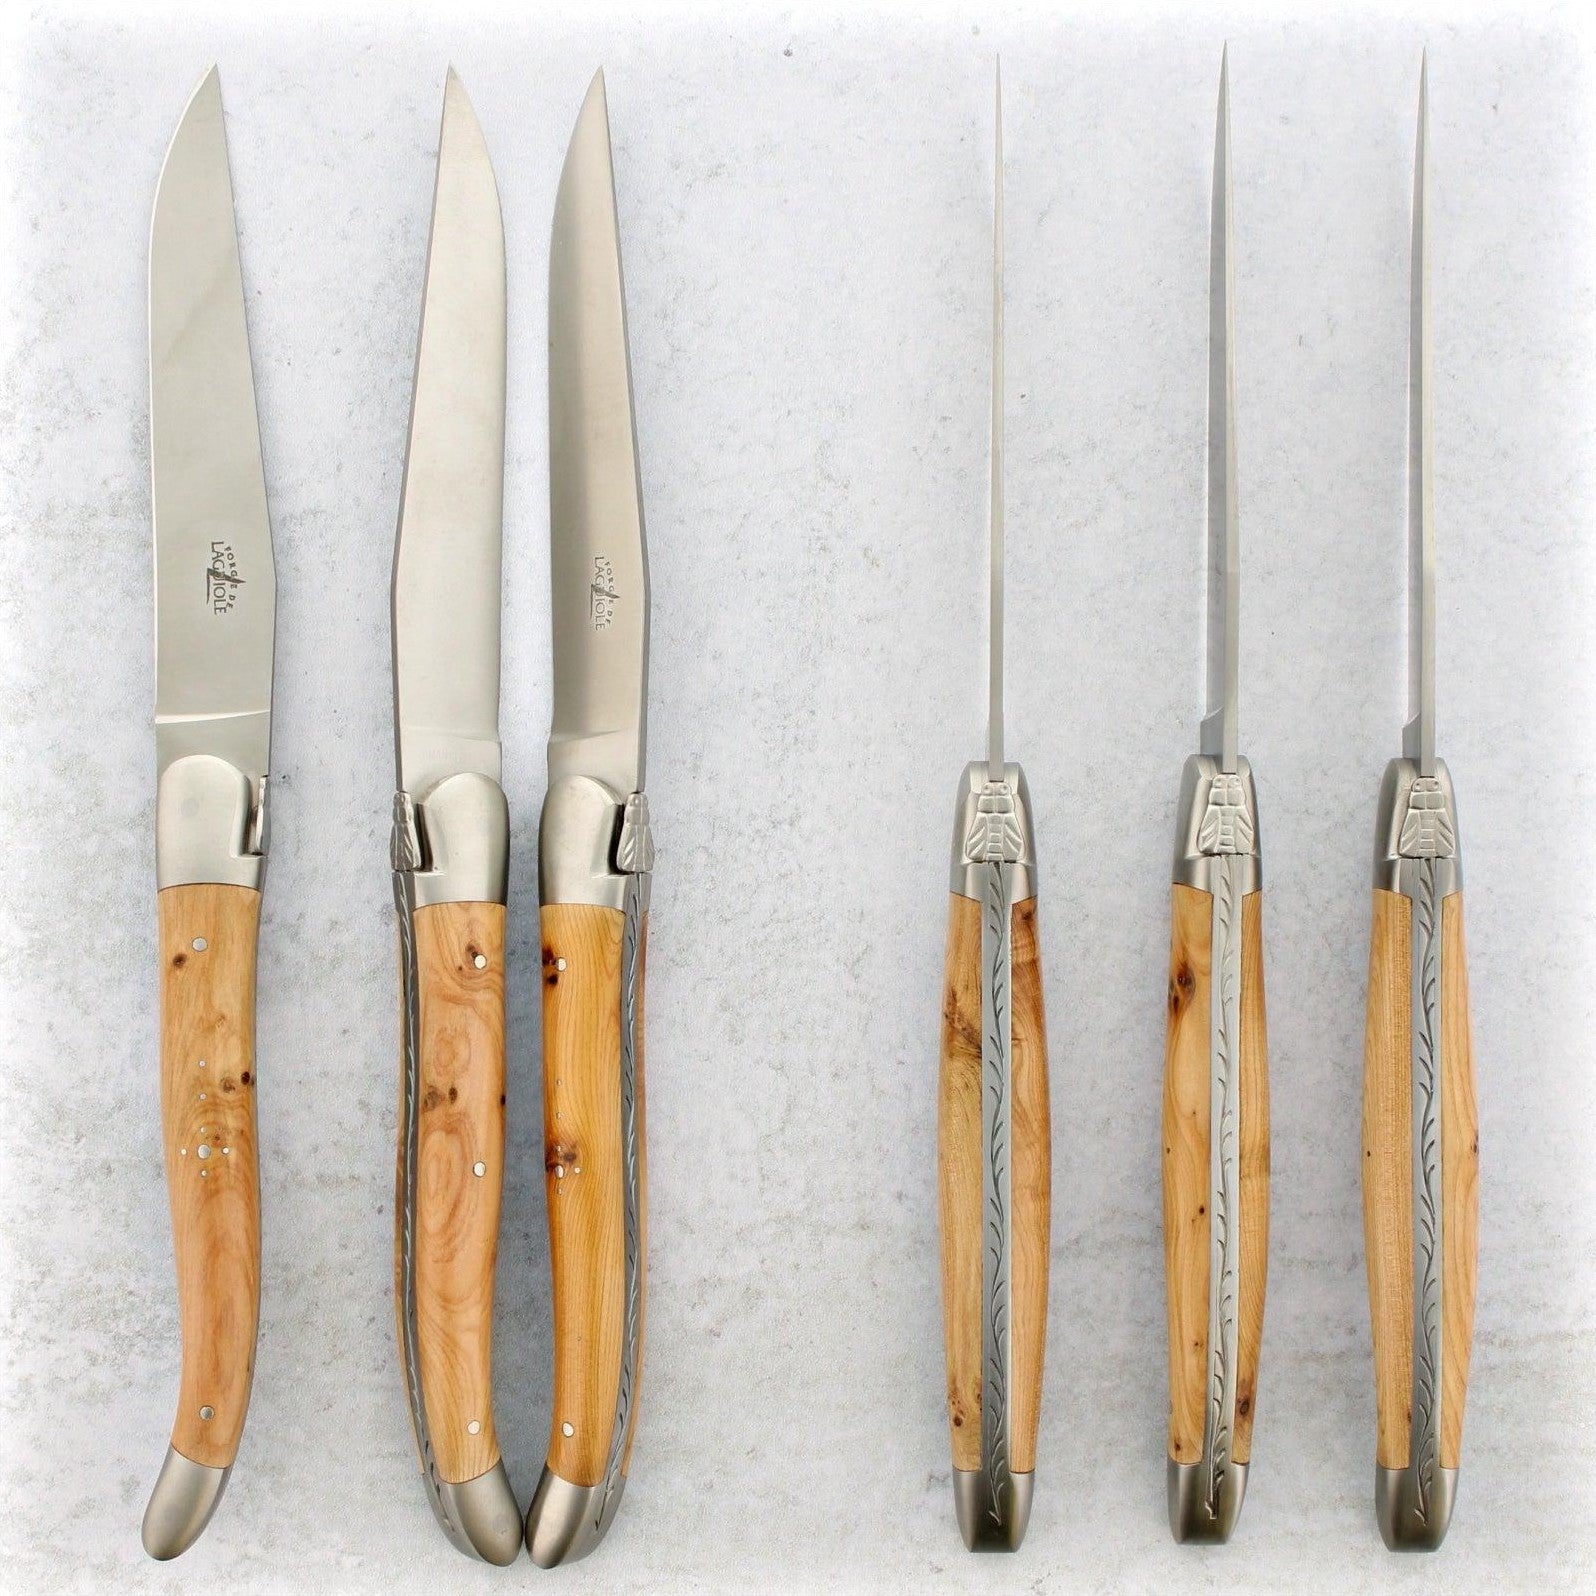 https://www.laguiole-imports.com/cdn/shop/products/Forge-de-Laguiole-Juniper-Wood-Steak-Knives-Brushed-Forge-de-Laguiole.jpg?v=1674998987